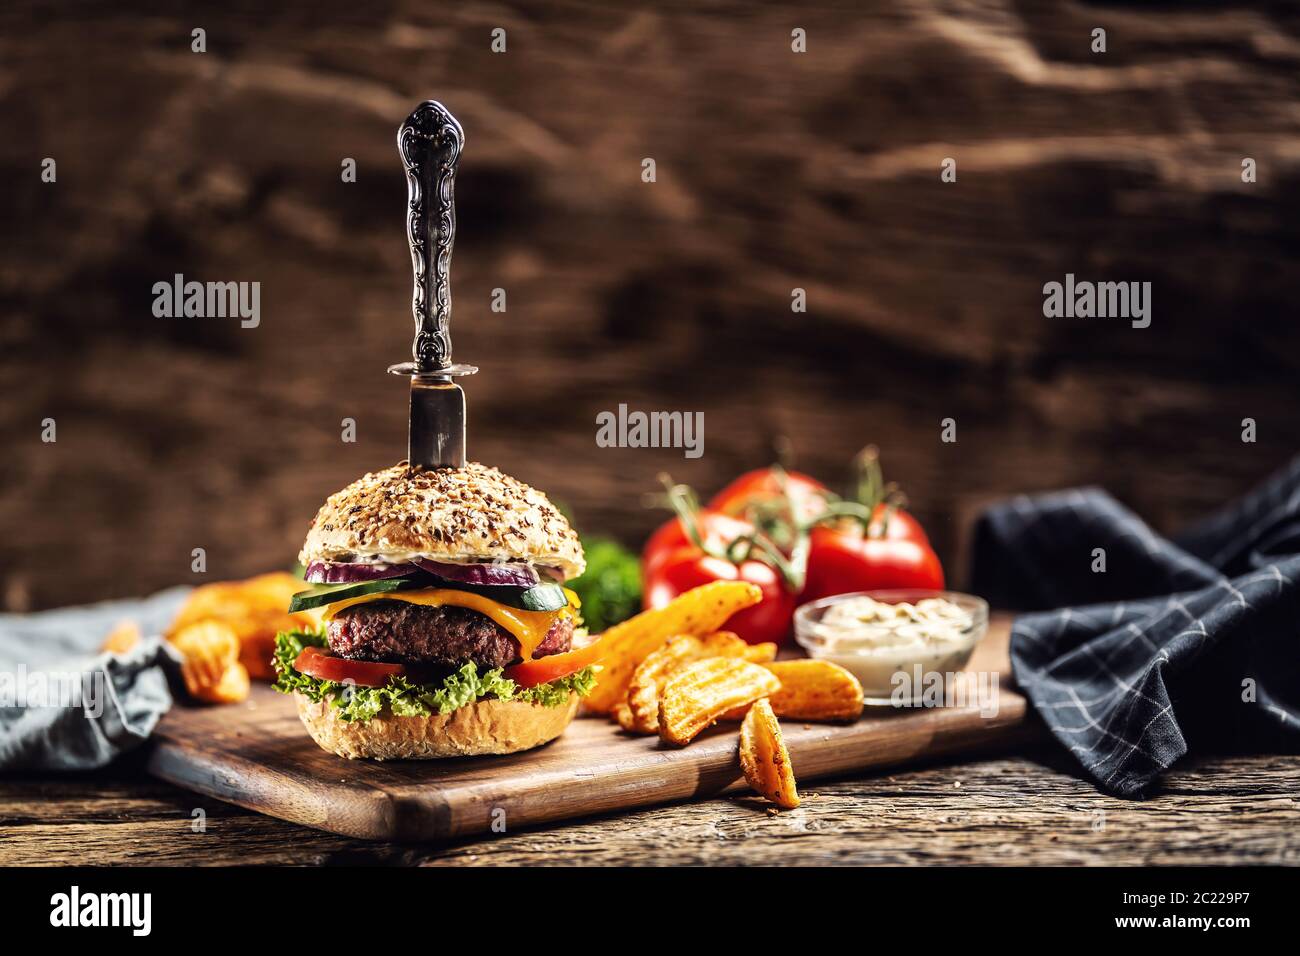 Cuchillo apuñalado en una hamburguesa con cuñas de patata en un lado en un ambiente rústico oscuro Foto de stock